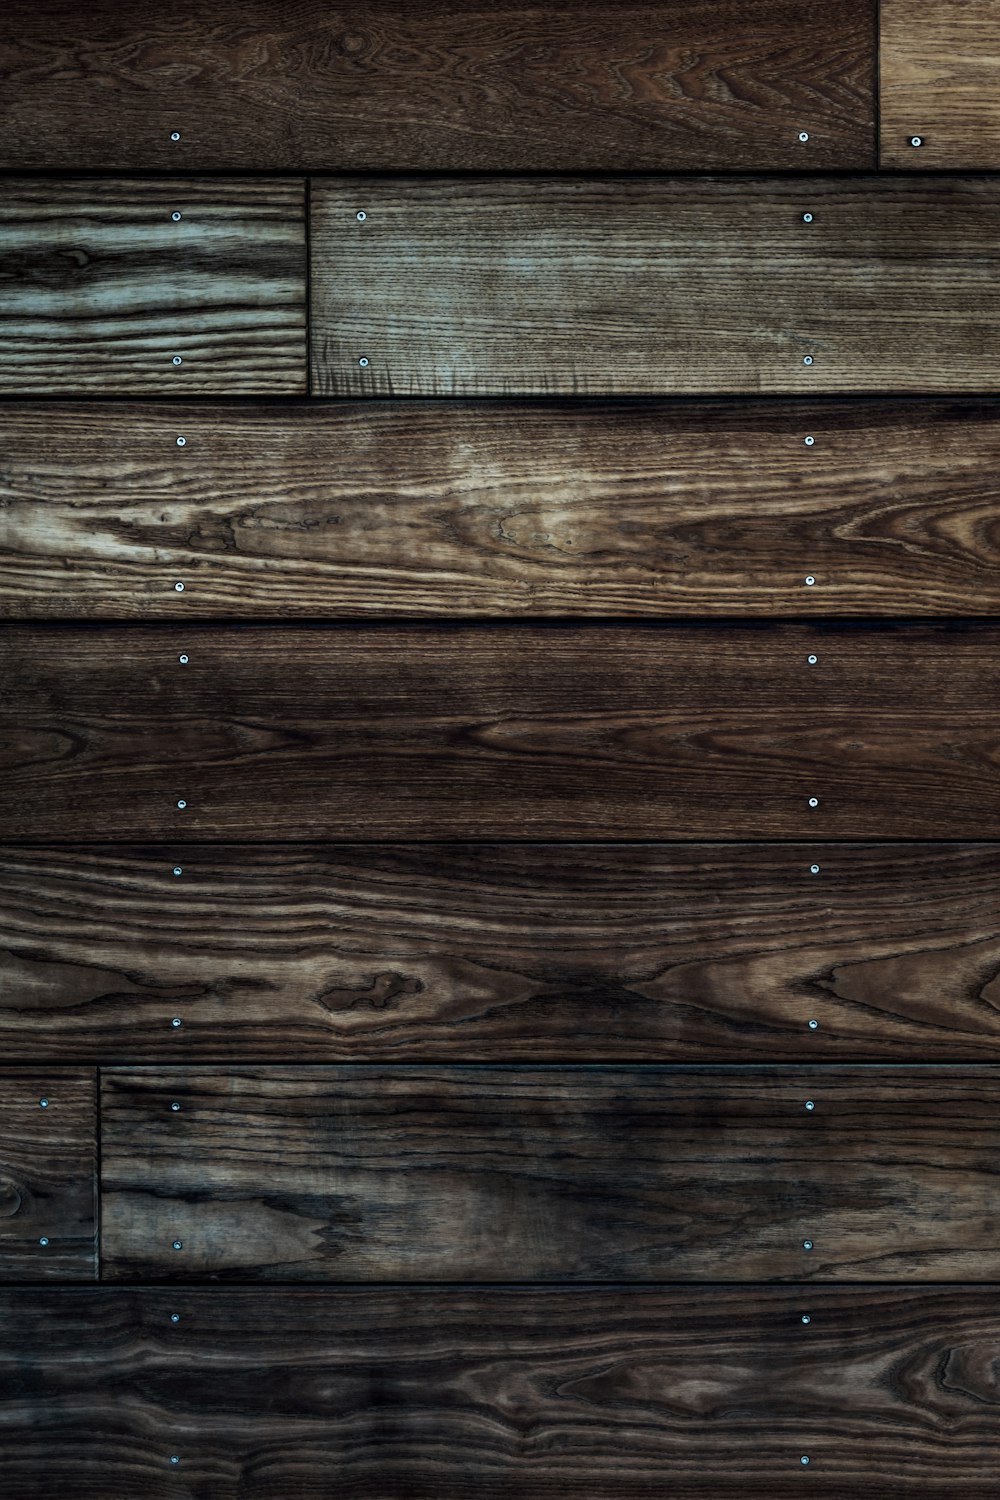 Hình ảnh nền gỗ thô (Rustic wood background) sẽ khiến bạn cảm thấy một sự gần gũi, giản dị với thiên nhiên và hòa nhập hơn với sự độc đáo của chiếc bàn nào đó. Không chỉ là một vật liệu đơn thuần, sợi gỗ của nó còn giúp tạo ra một thông điệp, một cảm hứng mới đủ để bạn thay đổi không gian sống của mình.